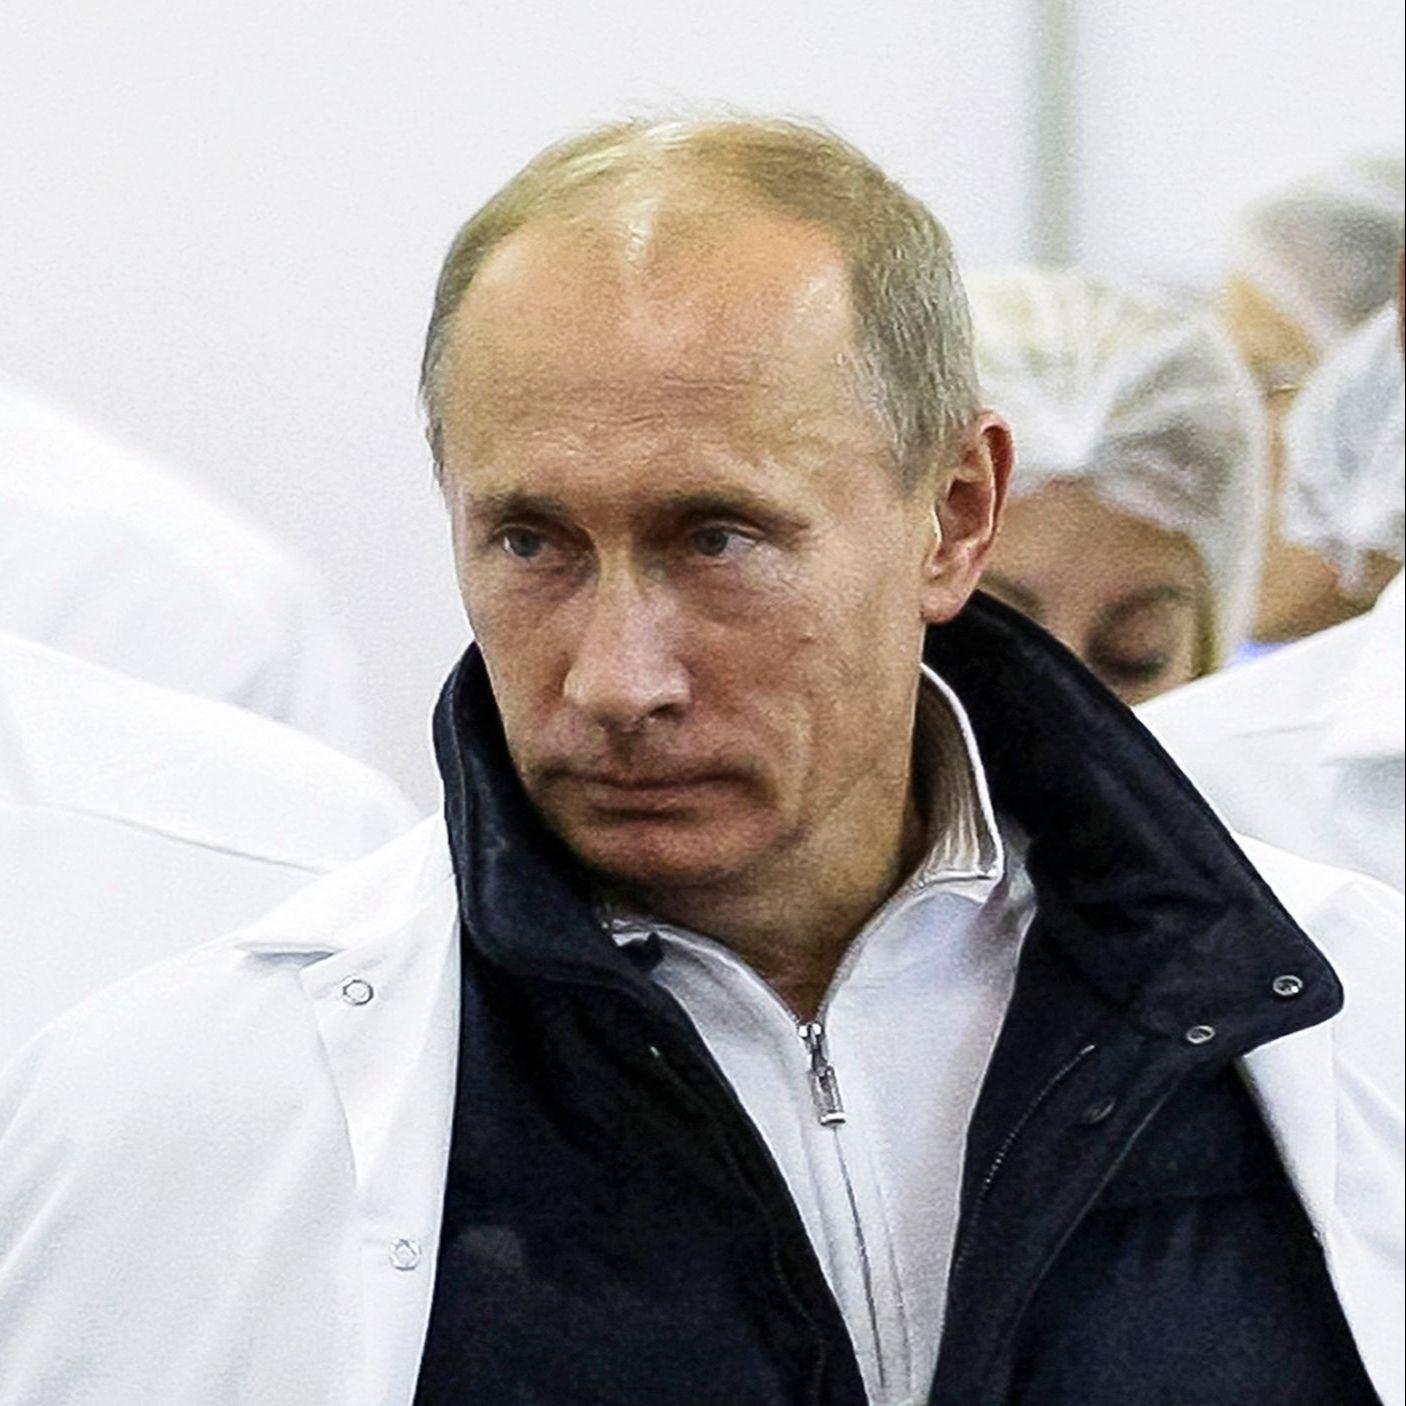 Putin se oglasio o smrti Prigožina: Bio je čovjek teške sudbine